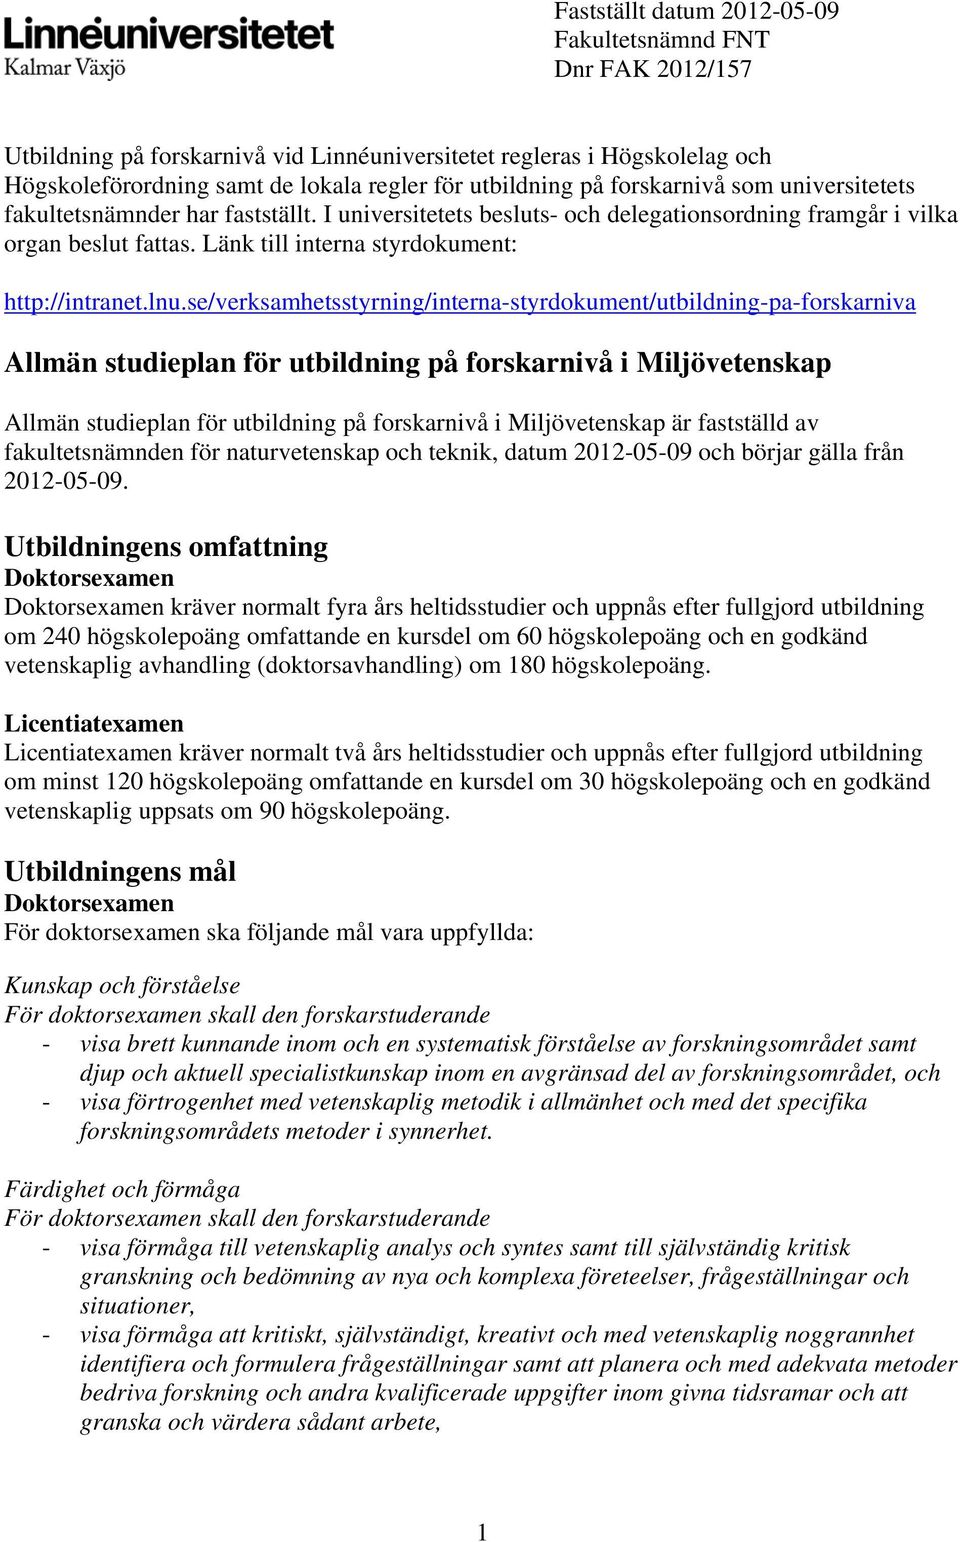 lnu.se/verksamhetsstyrning/interna-styrdokument/utbildning-pa-forskarniva Allmän studieplan för utbildning på forskarnivå i Miljövetenskap Allmän studieplan för utbildning på forskarnivå i